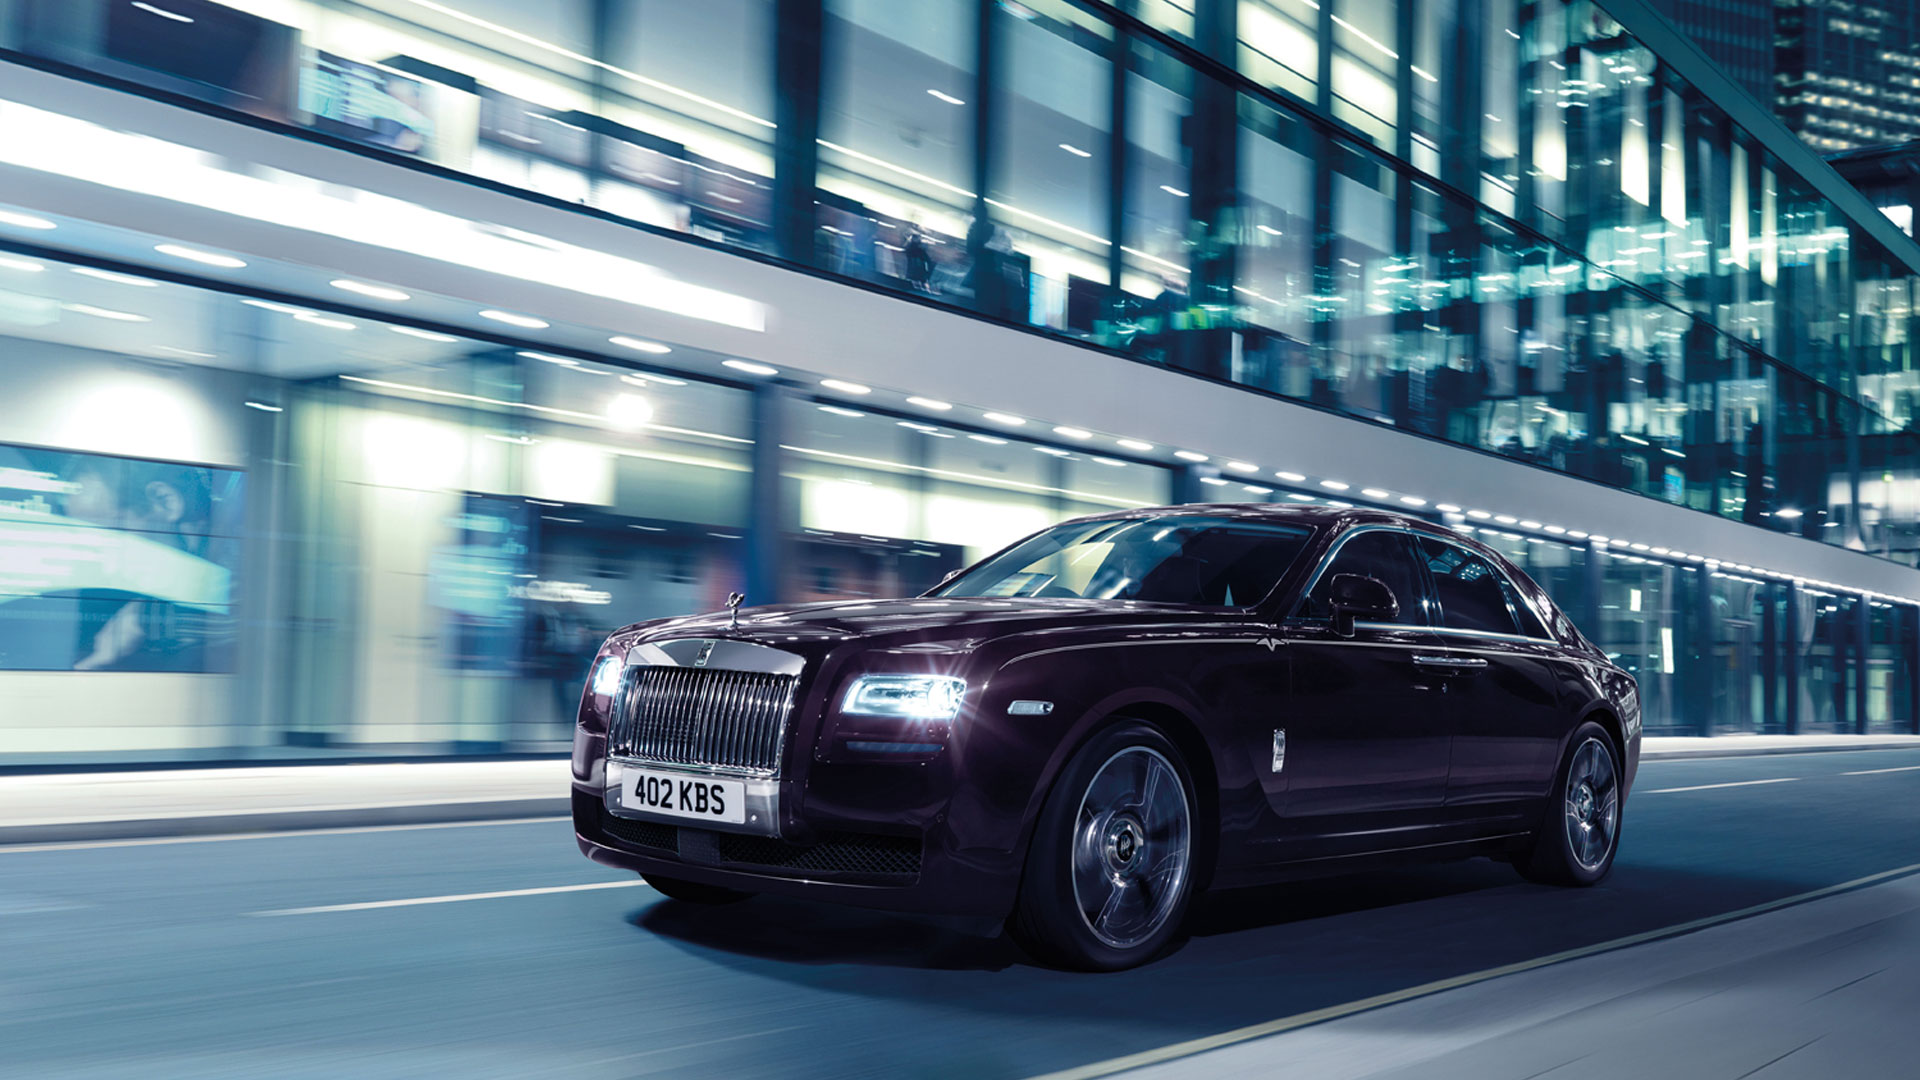 Rolls Royce Ghost-V Specification 2014 STD  Exterior